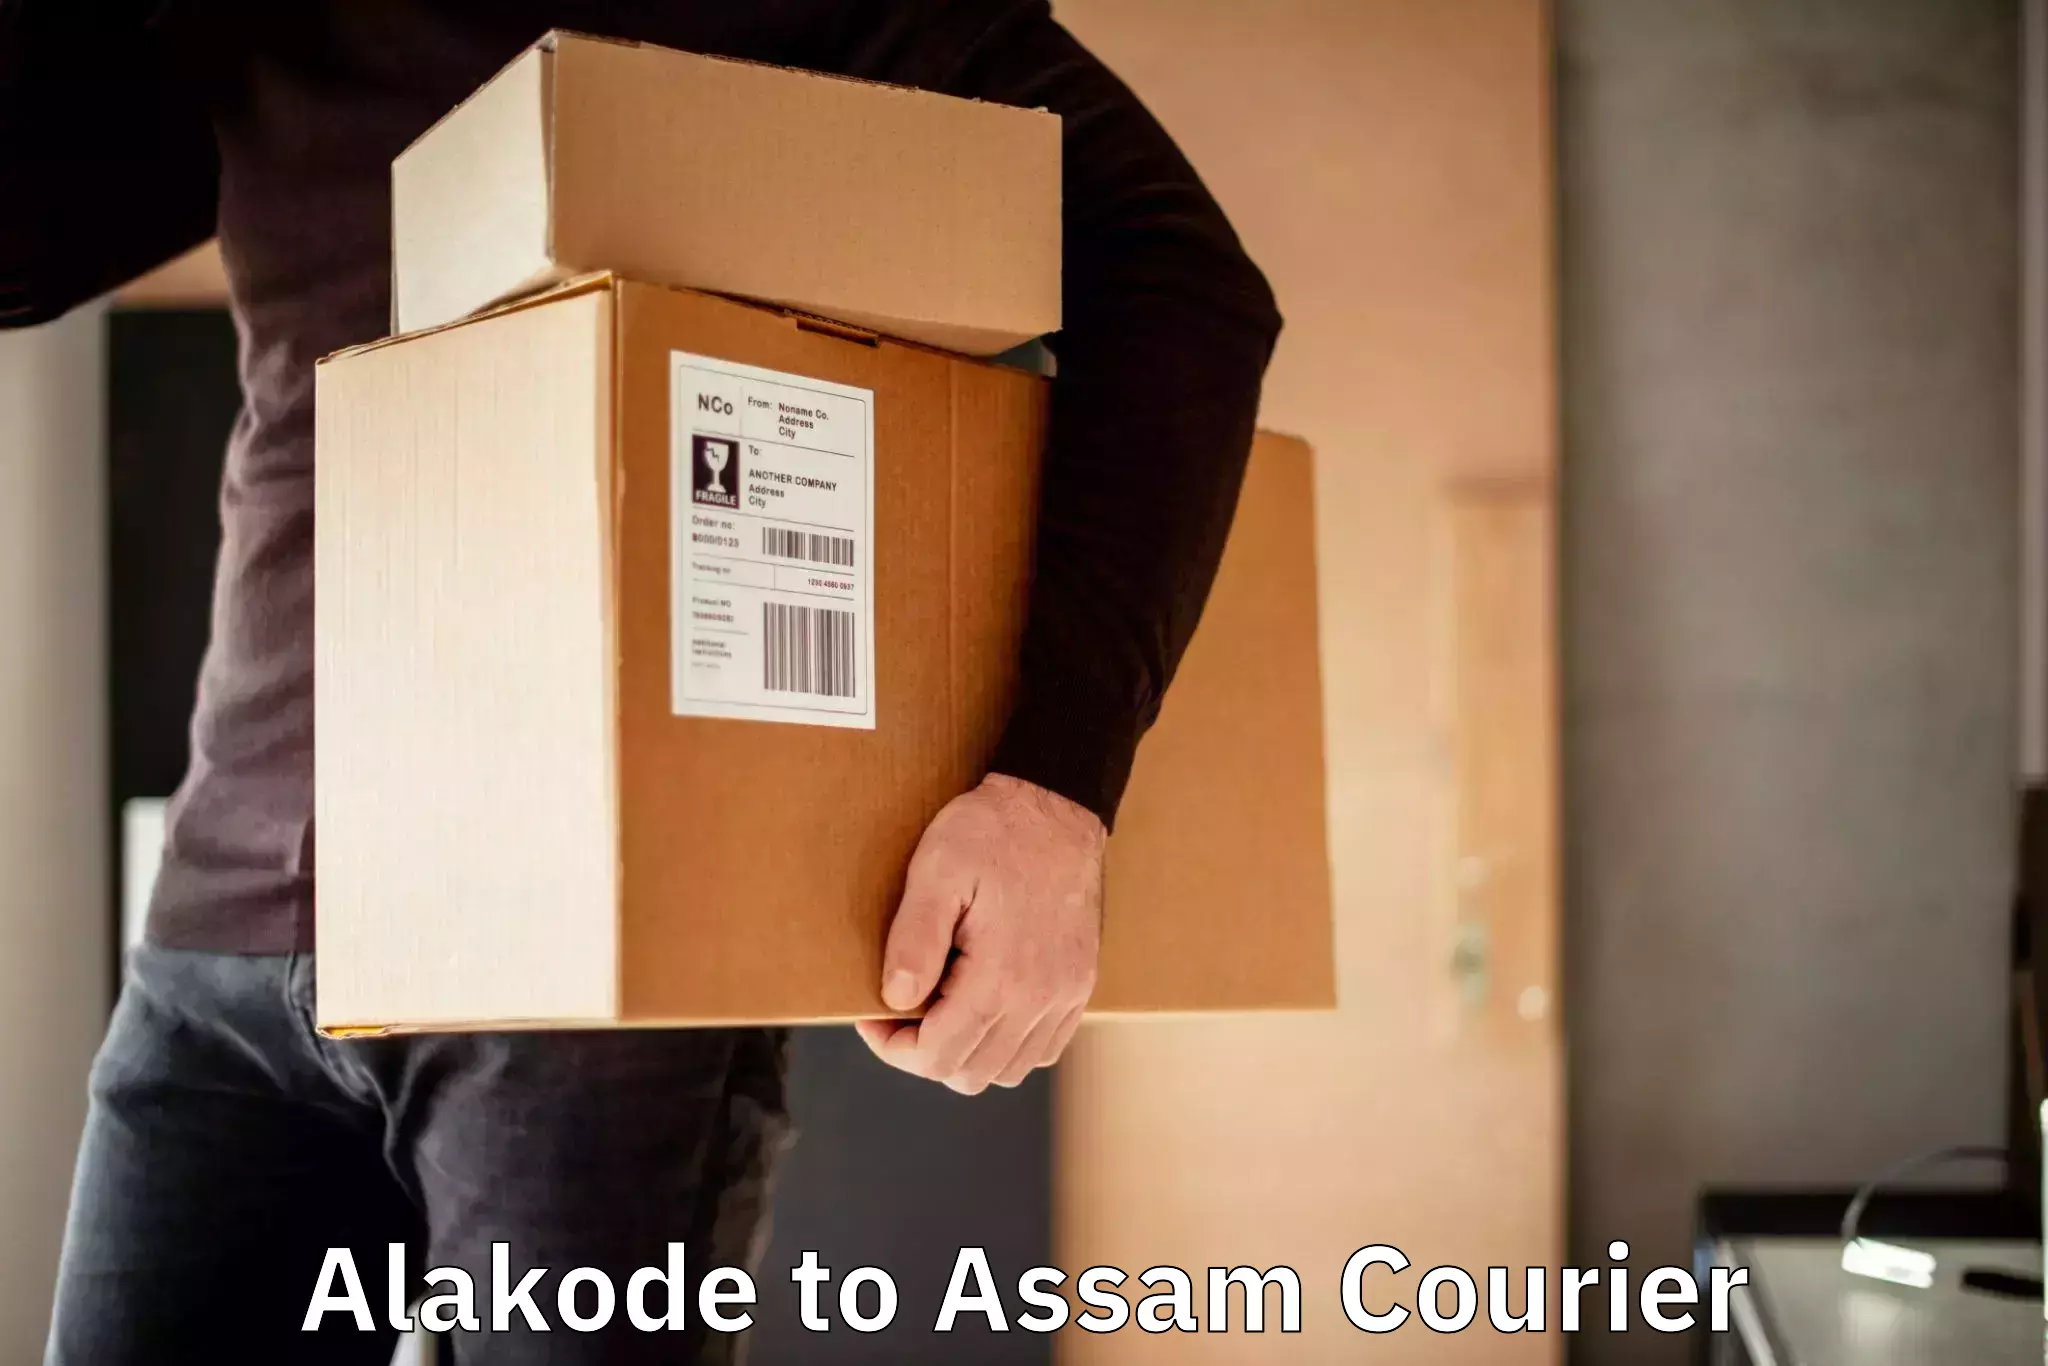 Courier service booking Alakode to Bamunimaidan